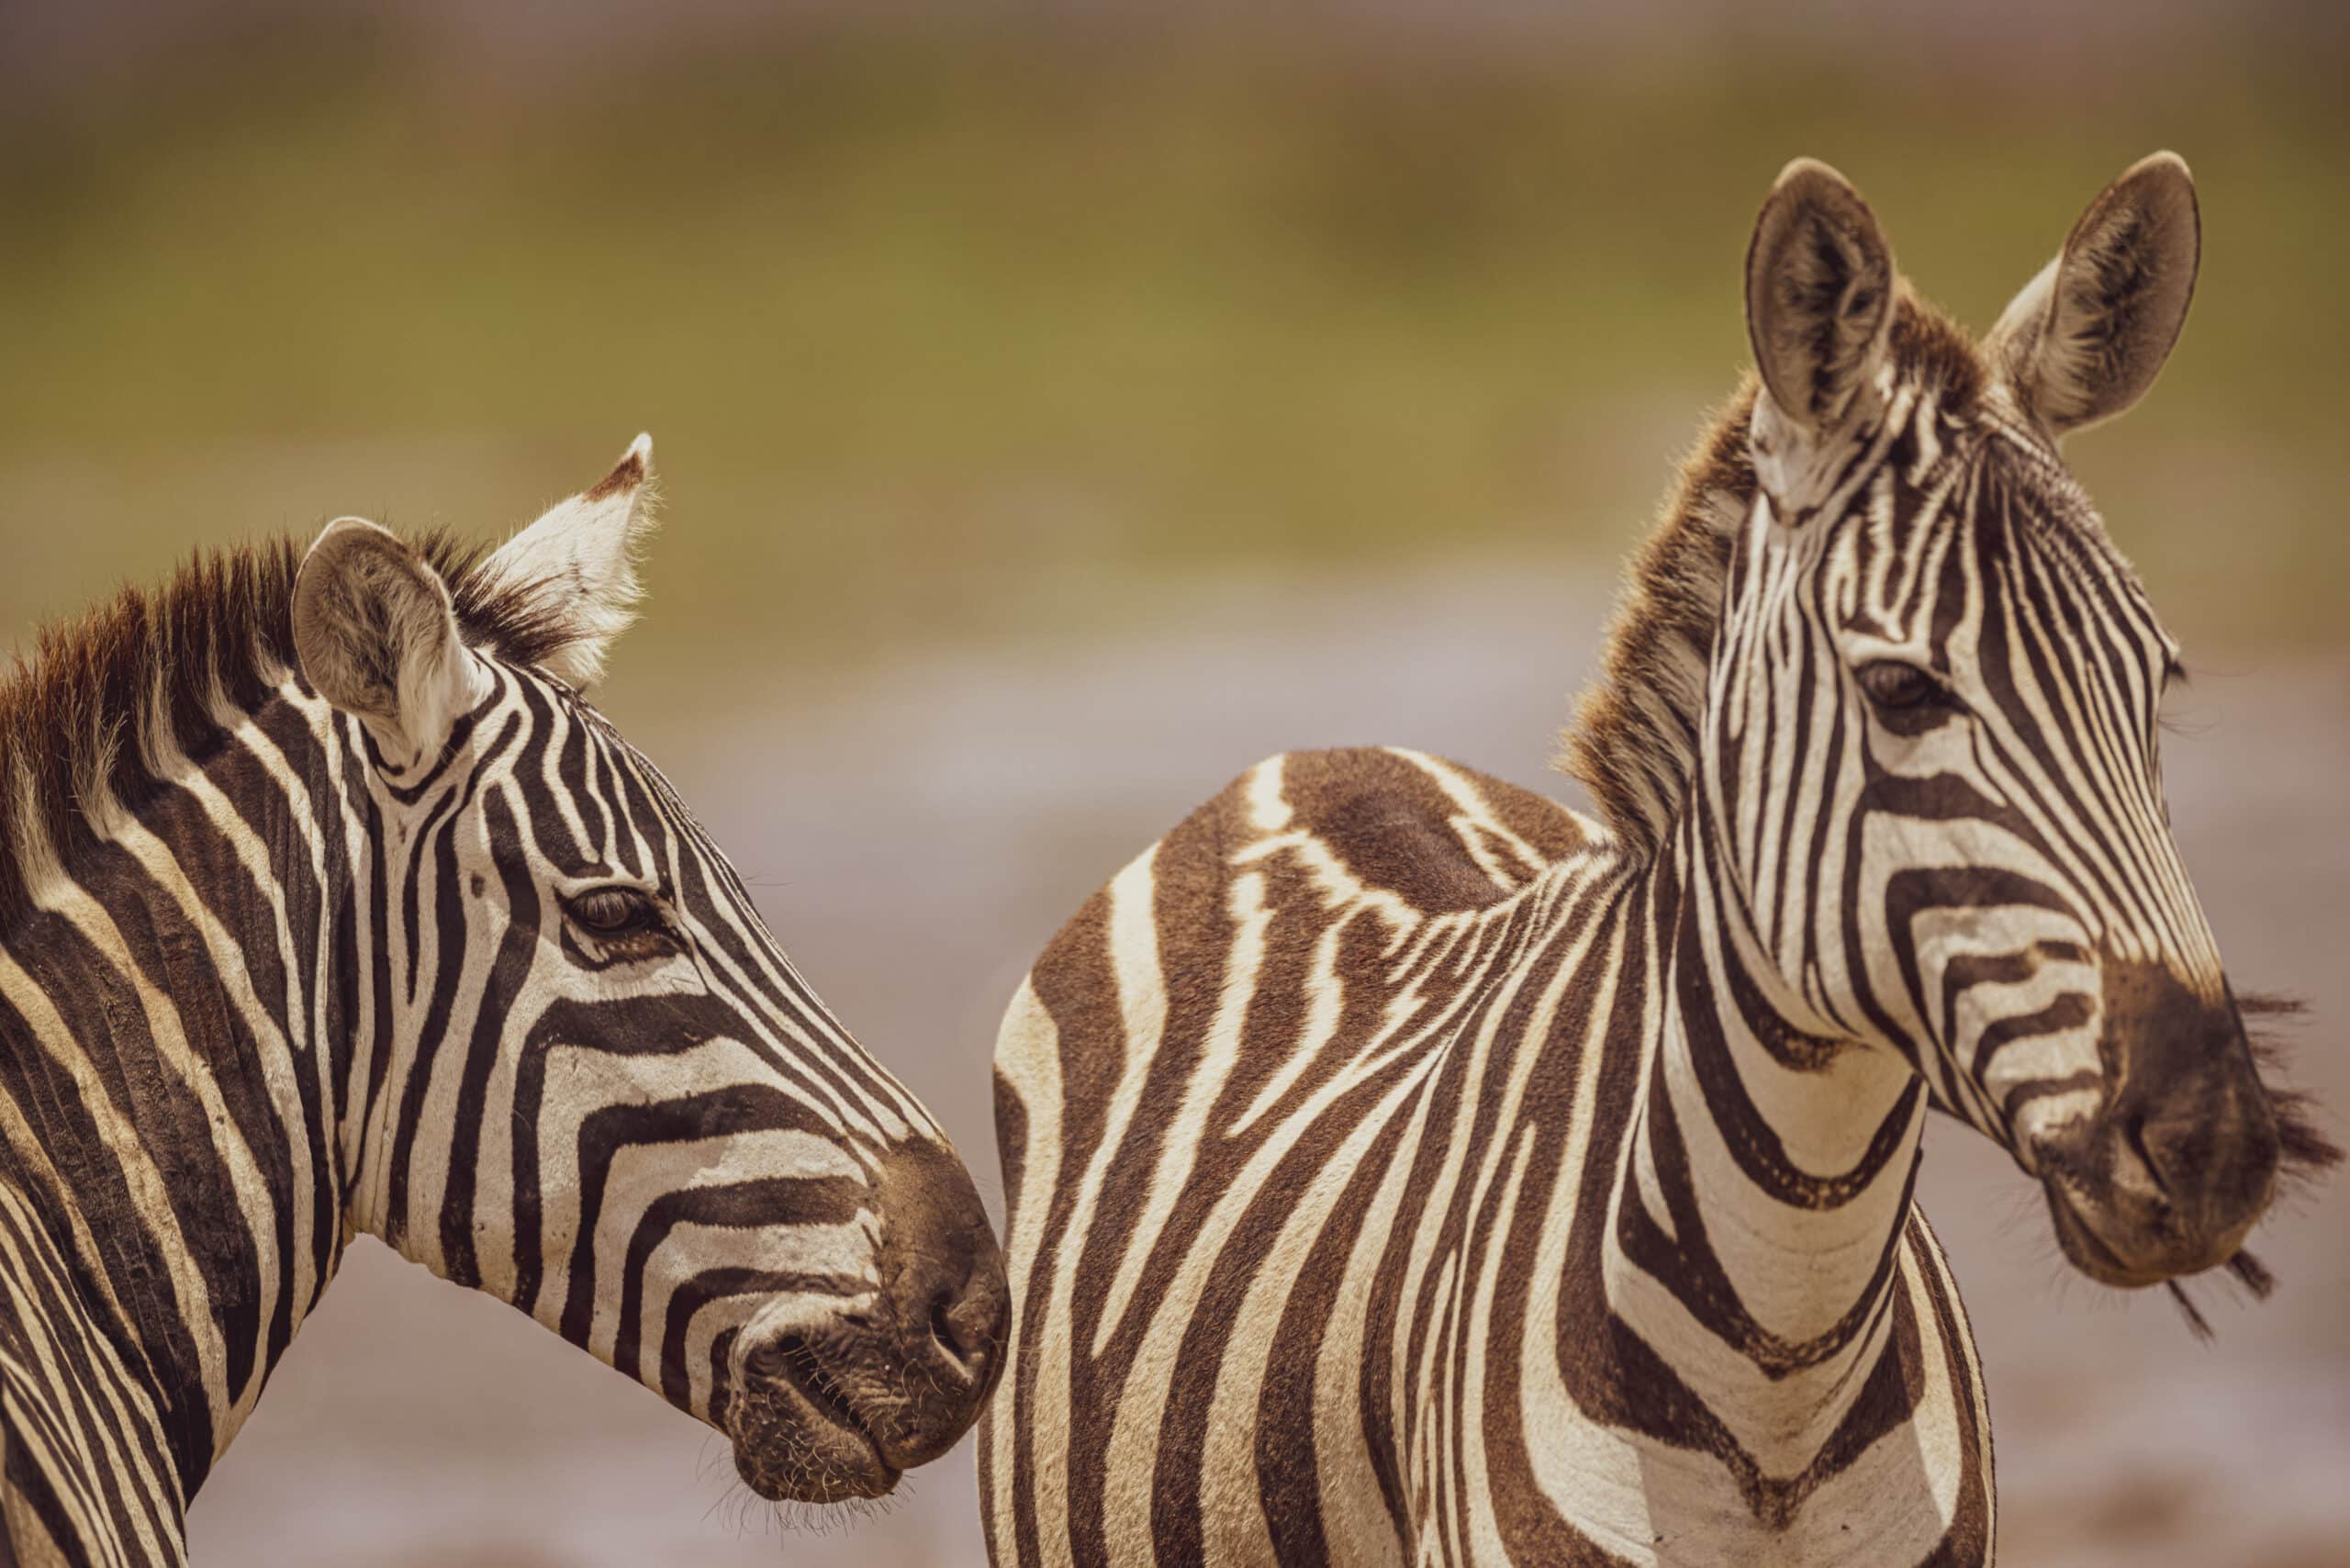 Zwei Zebras mit auffälligen schwarz-weißen Streifen stehen nebeneinander in einer natürlichen Umgebung, wobei ein Zebra in die Kamera blickt, während das andere wegschaut. © Fotografie Tomas Rodriguez